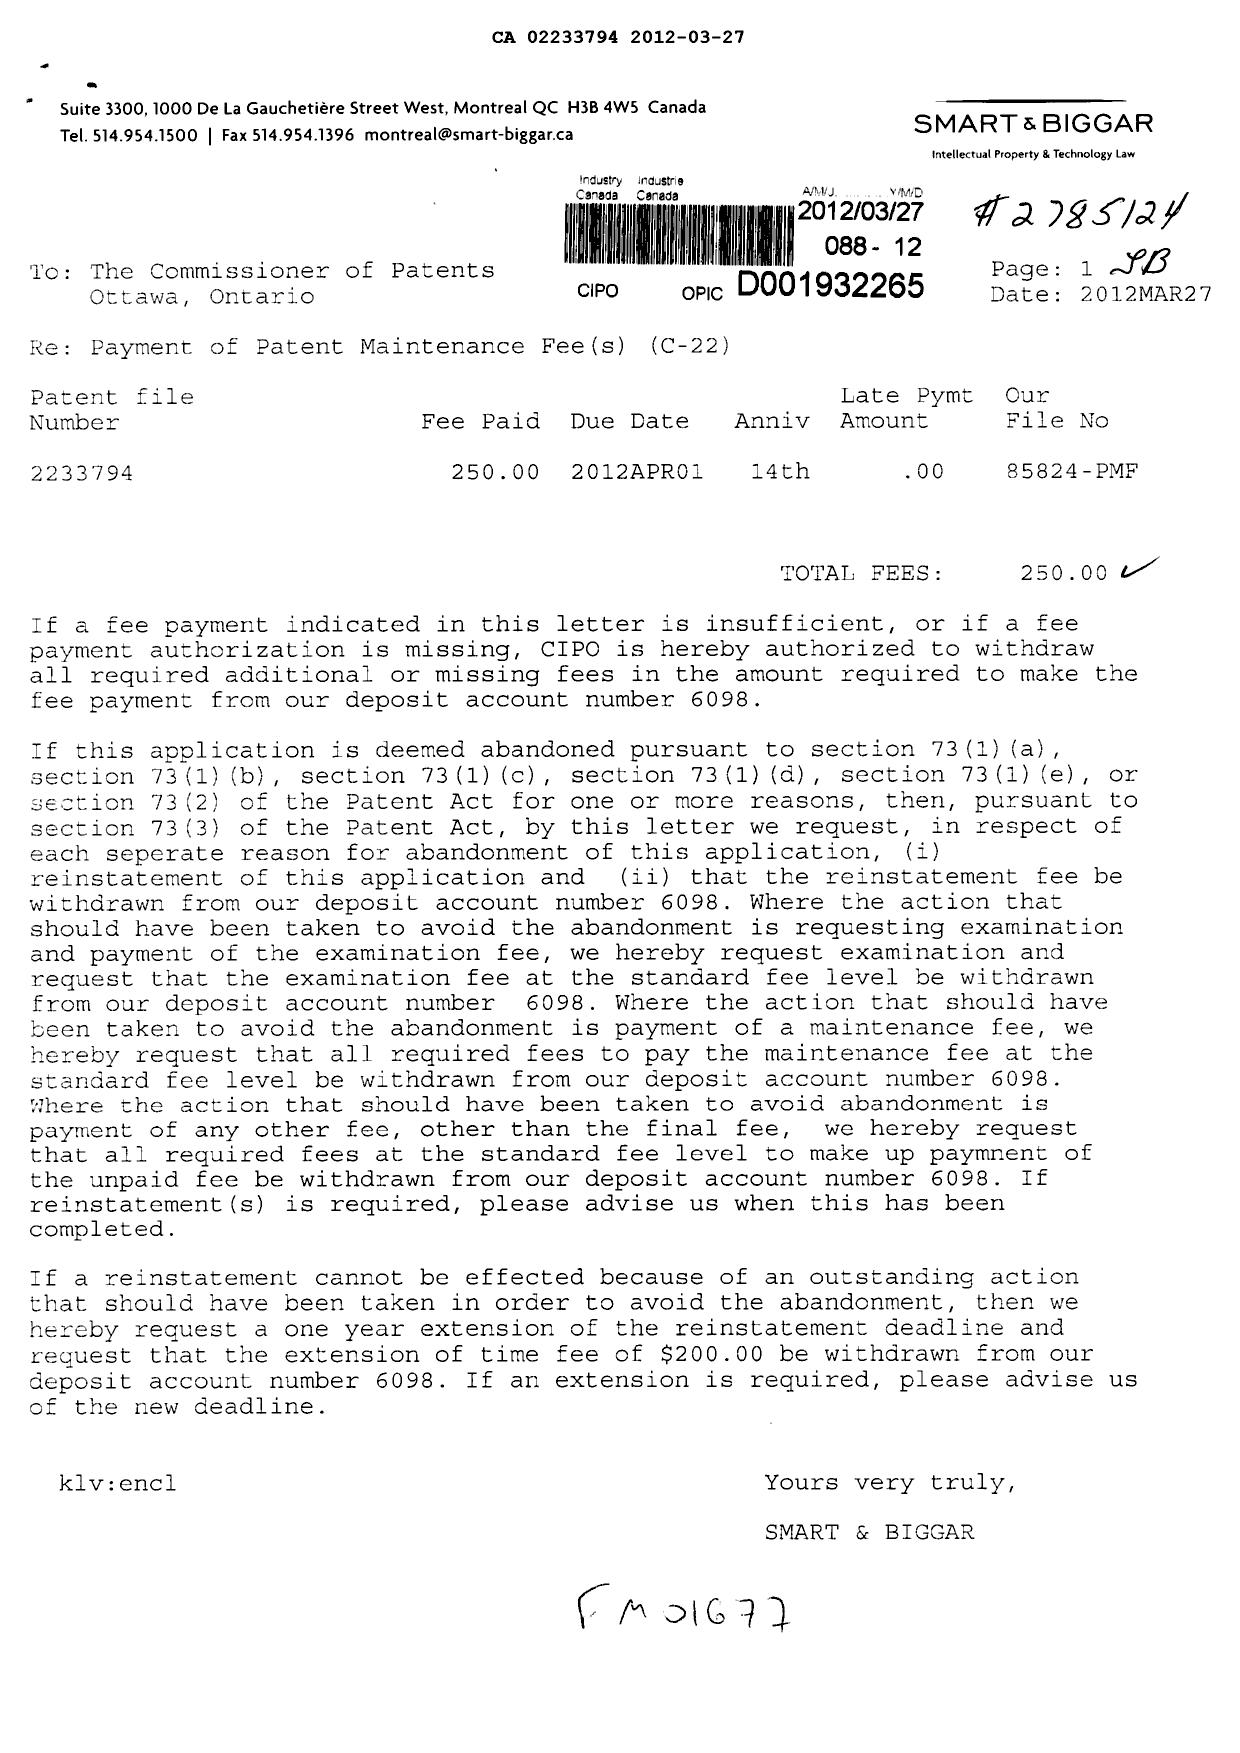 Document de brevet canadien 2233794. Taxes 20111227. Image 1 de 1